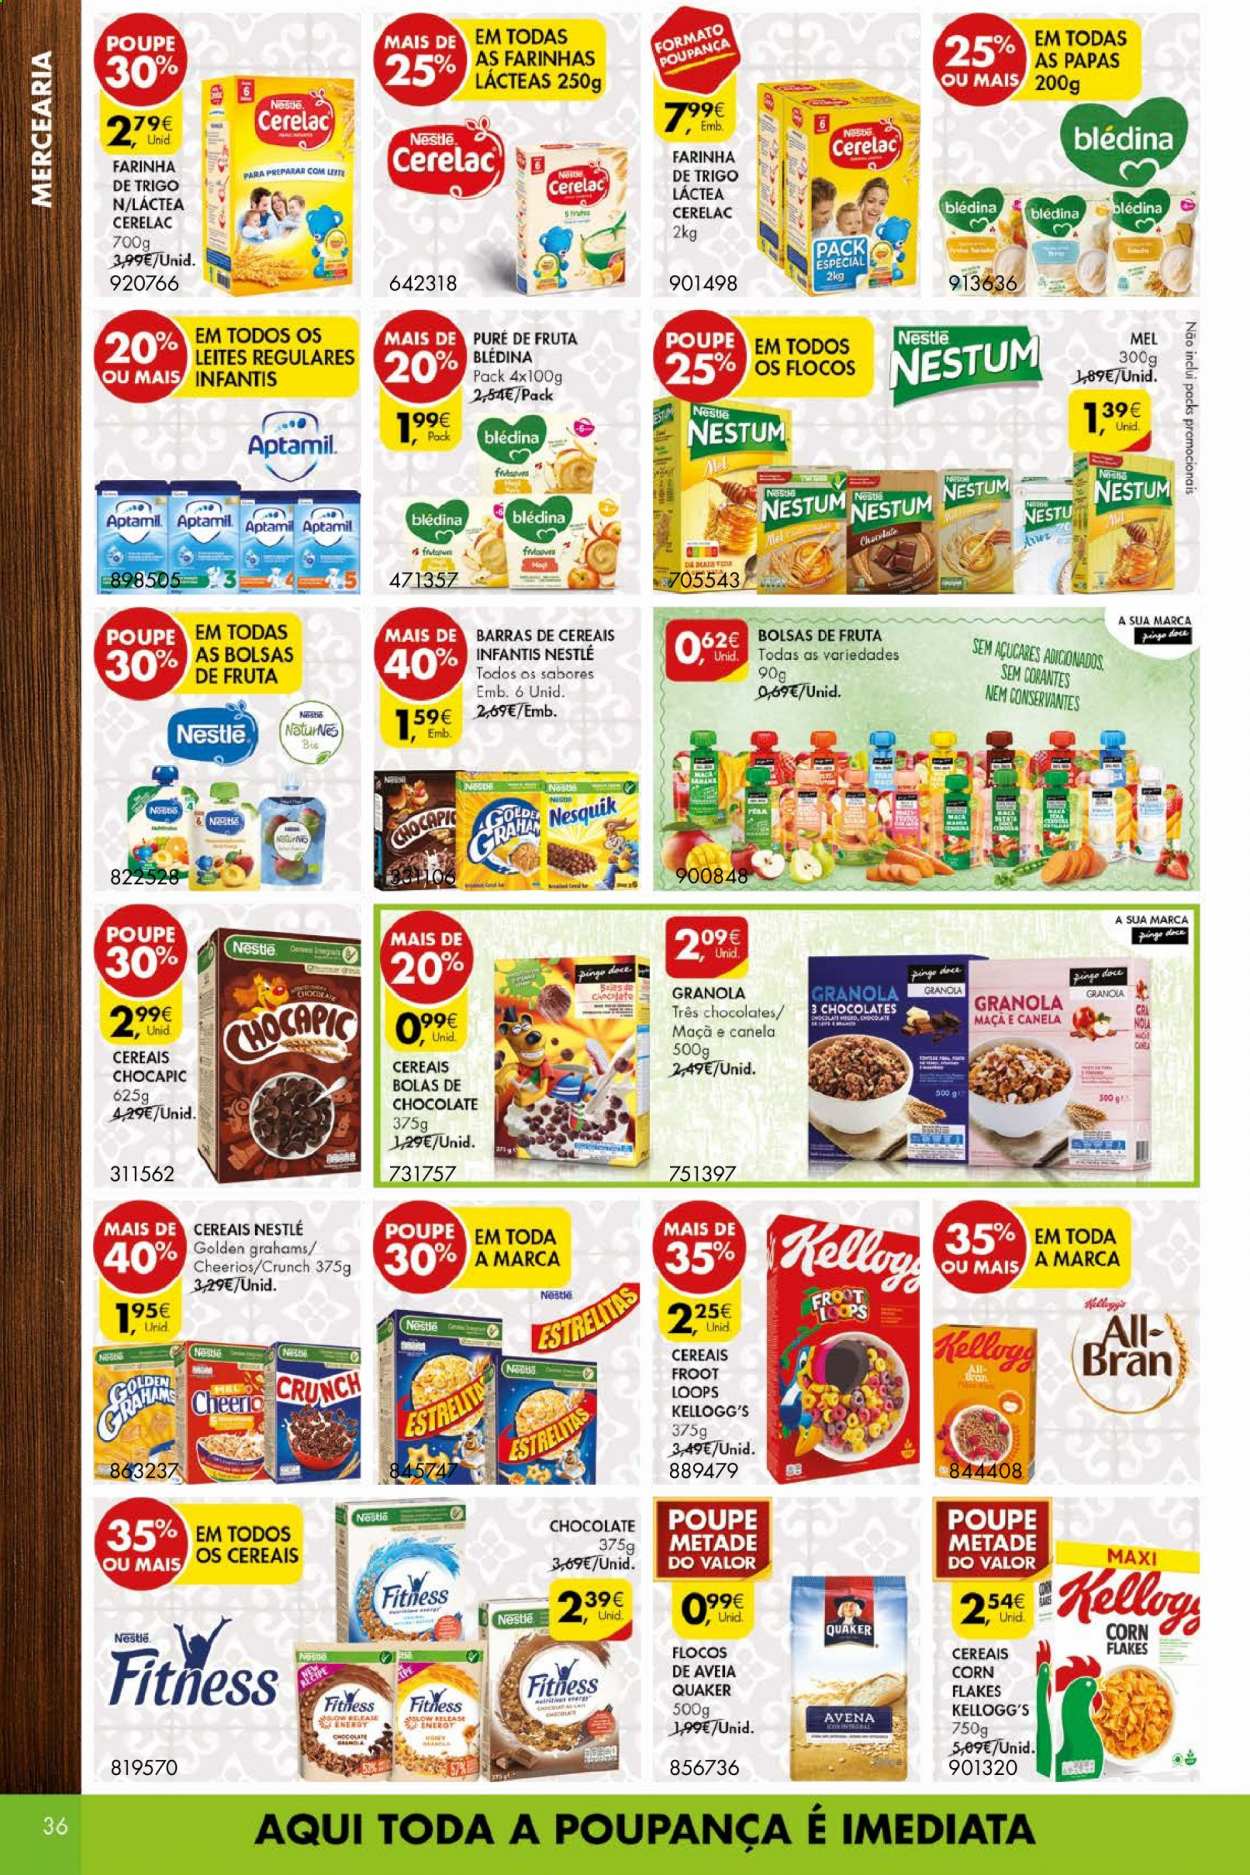 thumbnail - Folheto Pingo Doce - 30.3.2021 - 5.4.2021 - Produtos em promoção - Nesquik, chocolate, Nestlé, farinha, flocos, granola, Kellogg's, mel. Página 36.